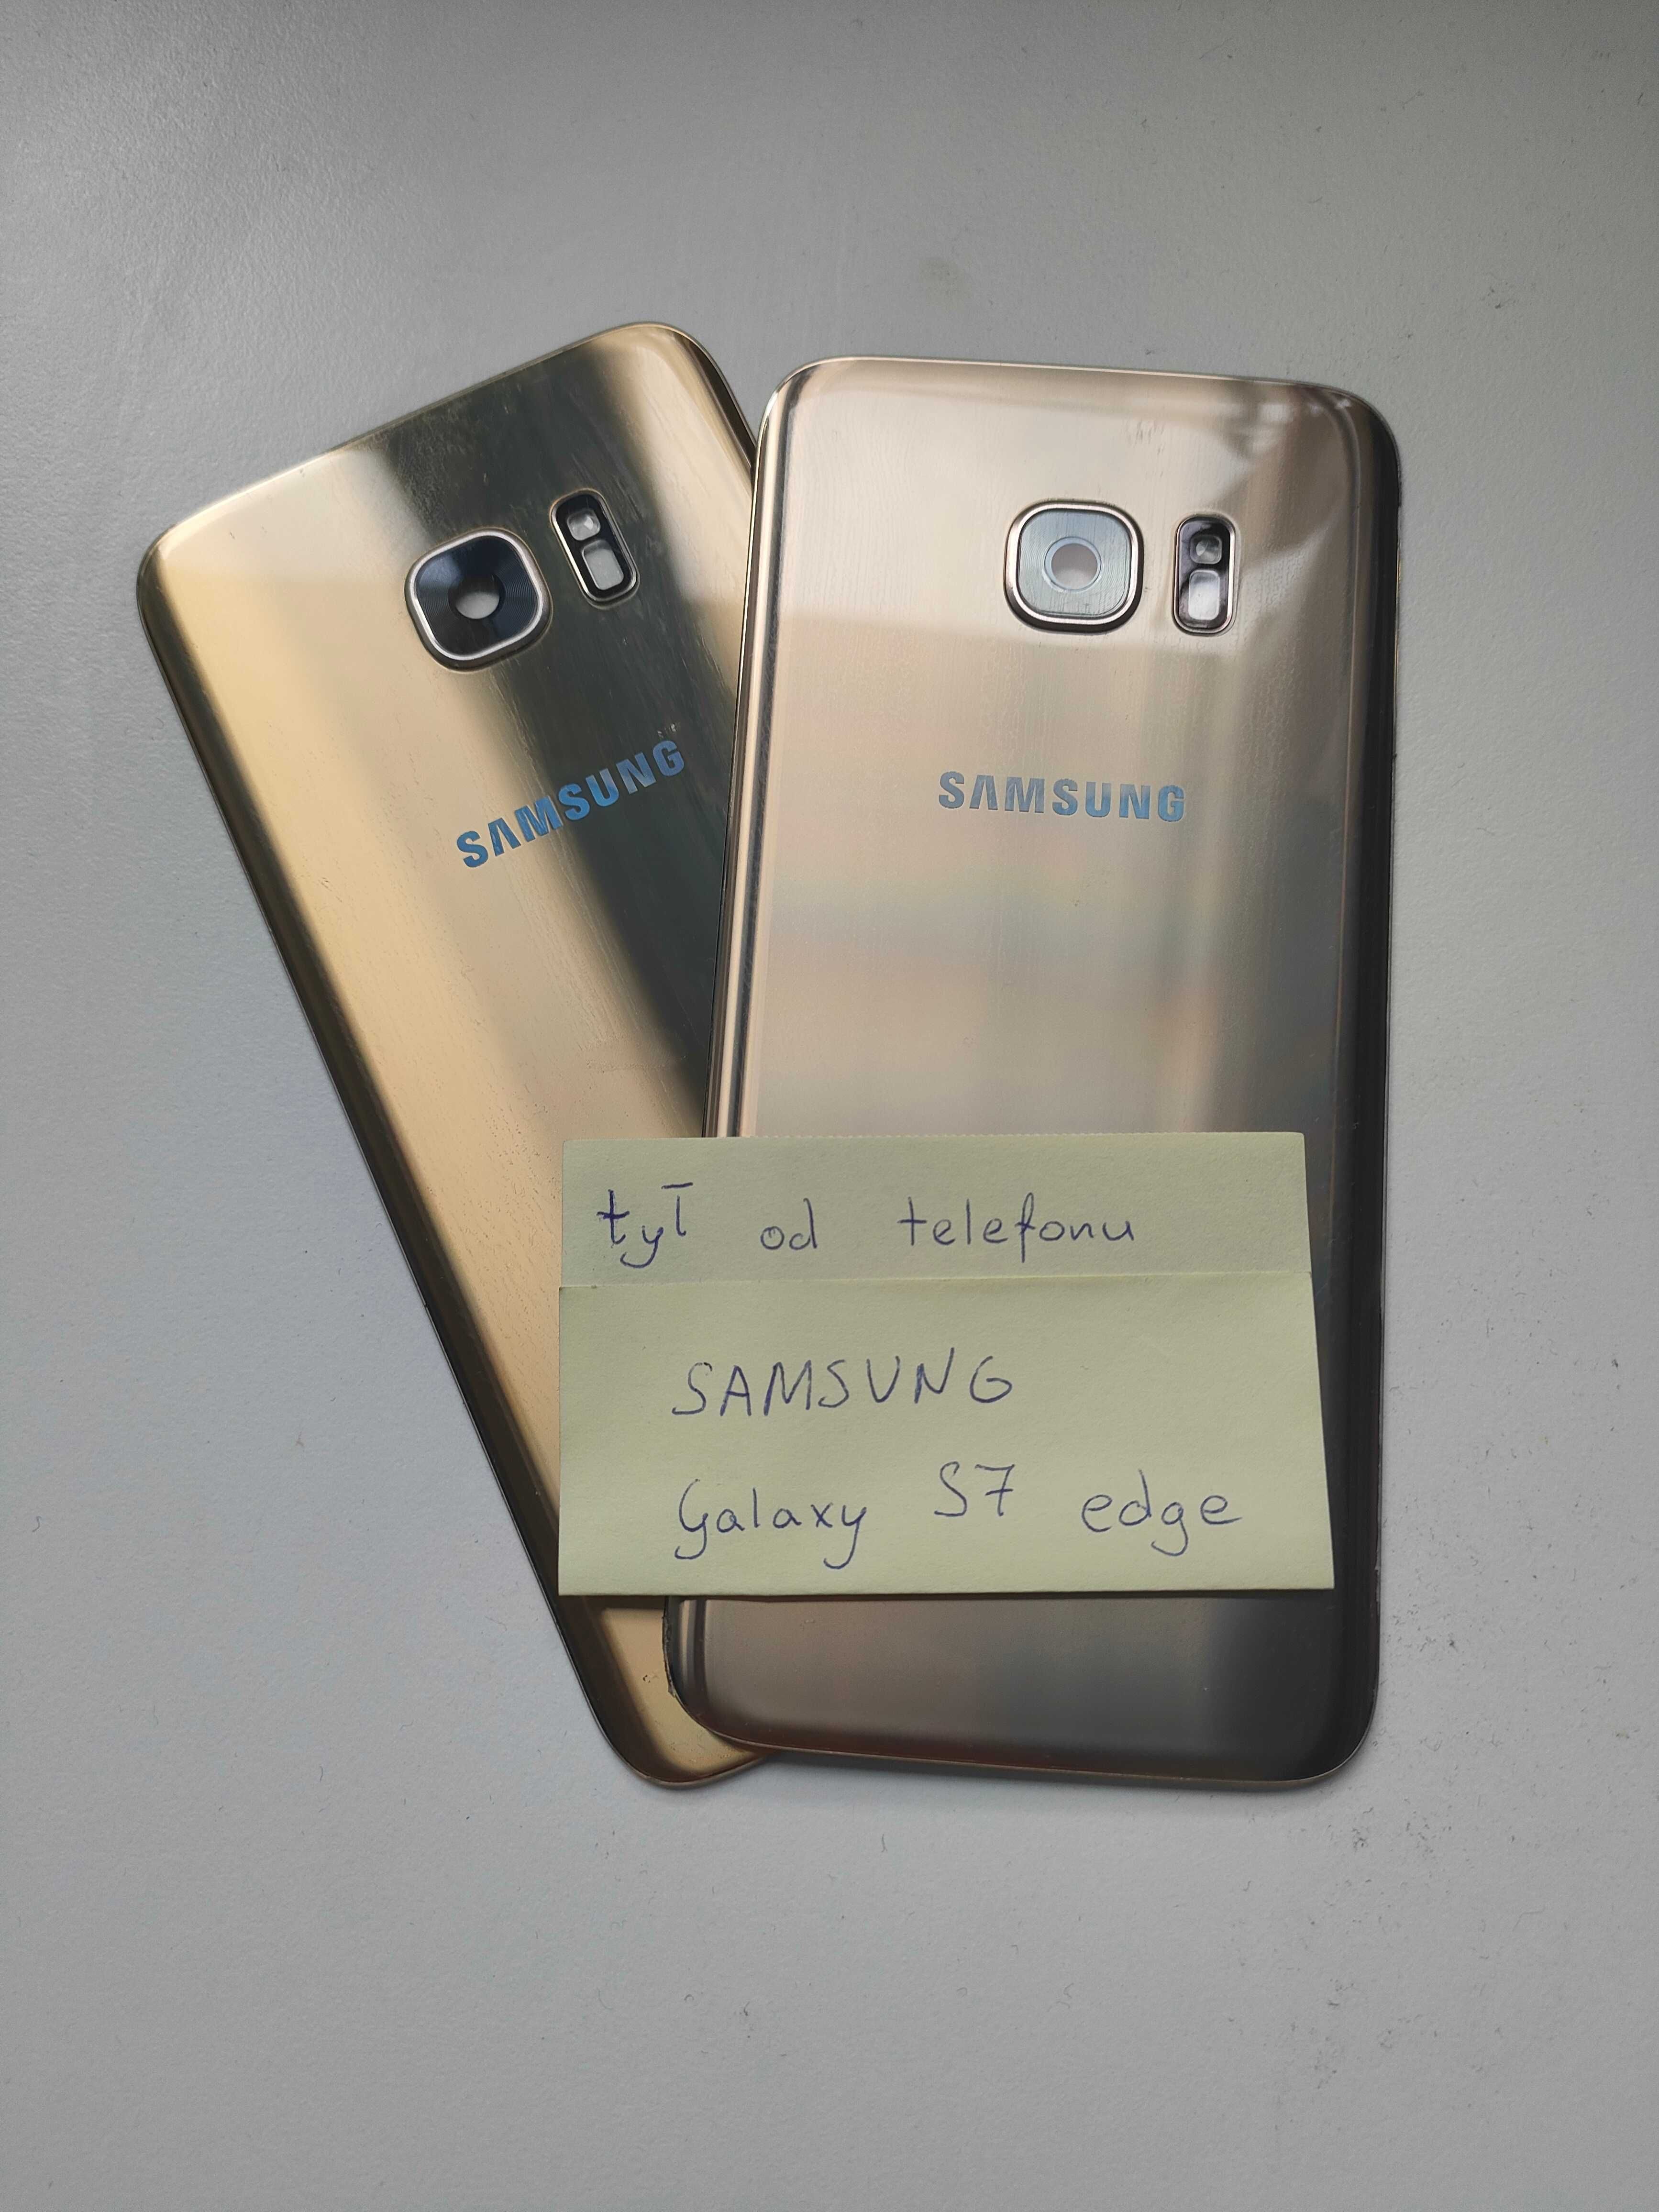 Tyły od telefonów SAMSUNG Galaxy S7 egde